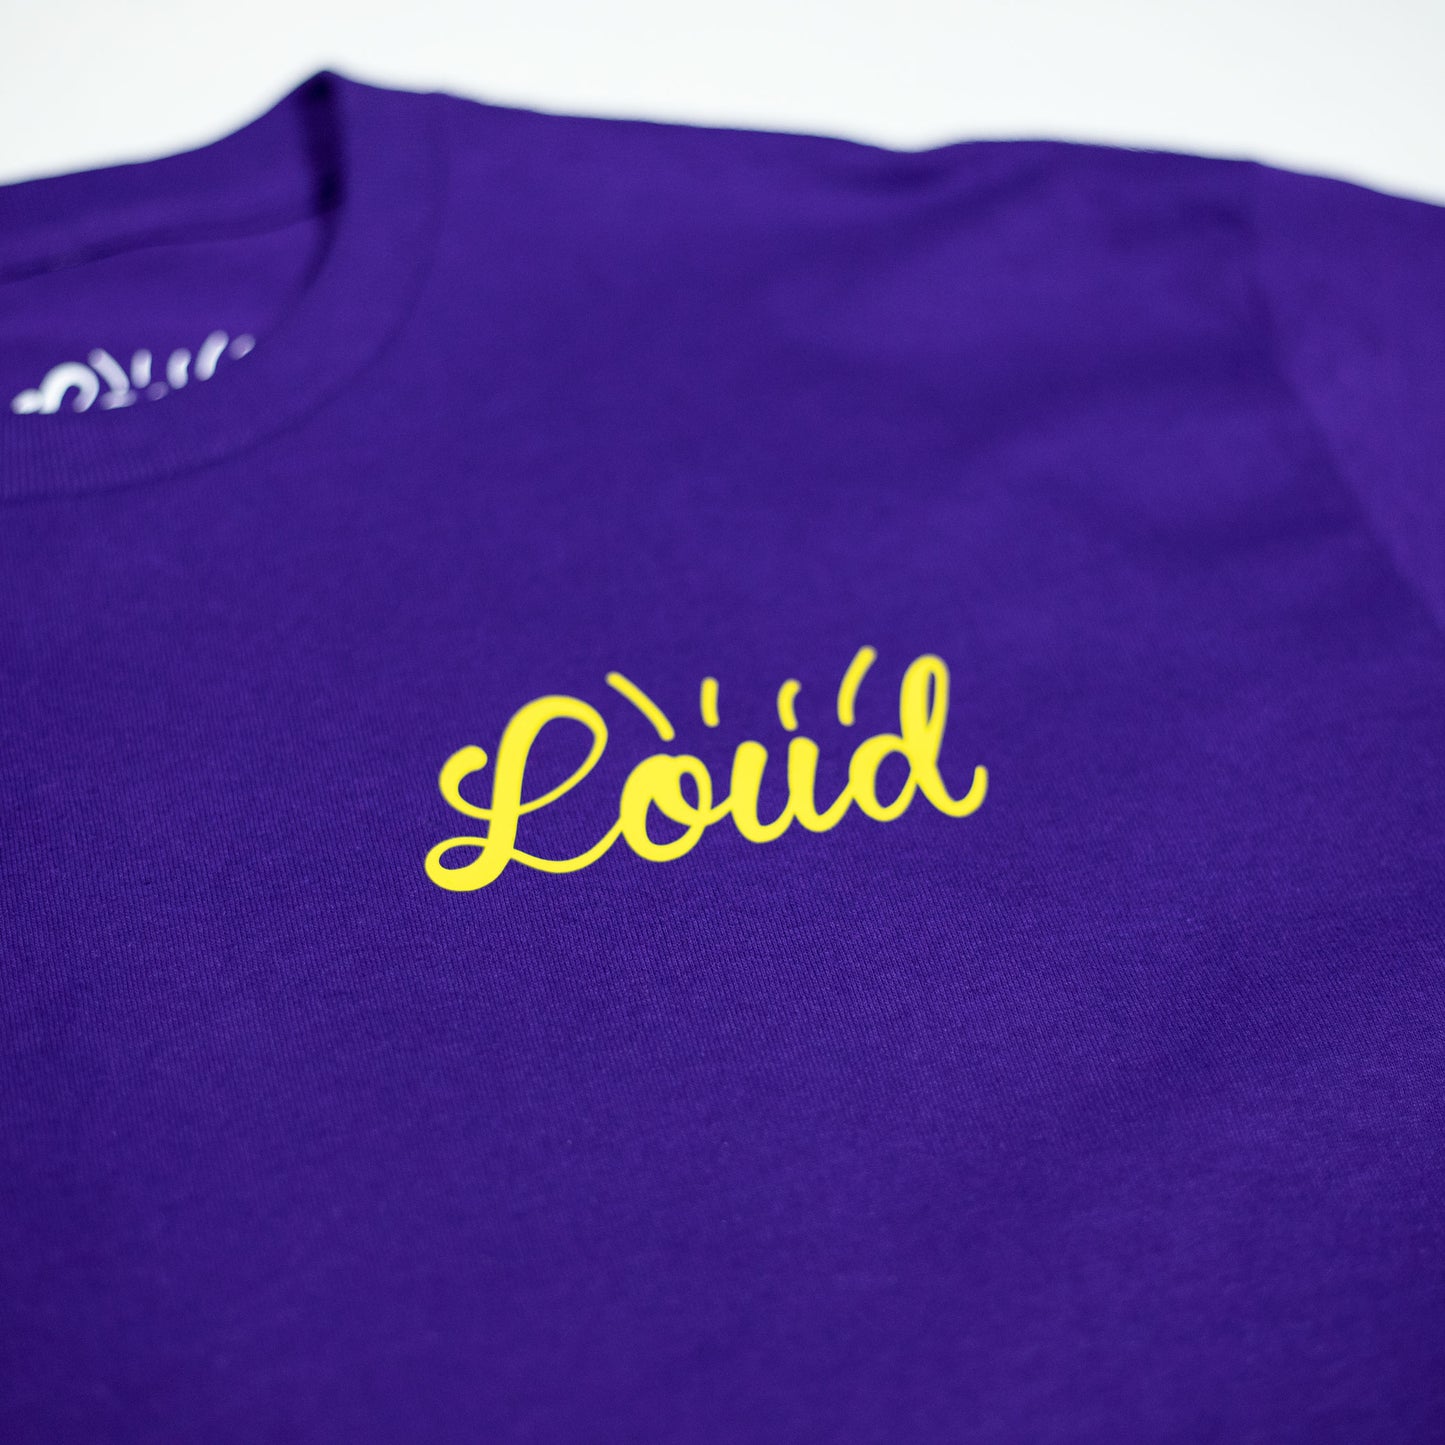 Loud x Kreative Ink Tee - Purple